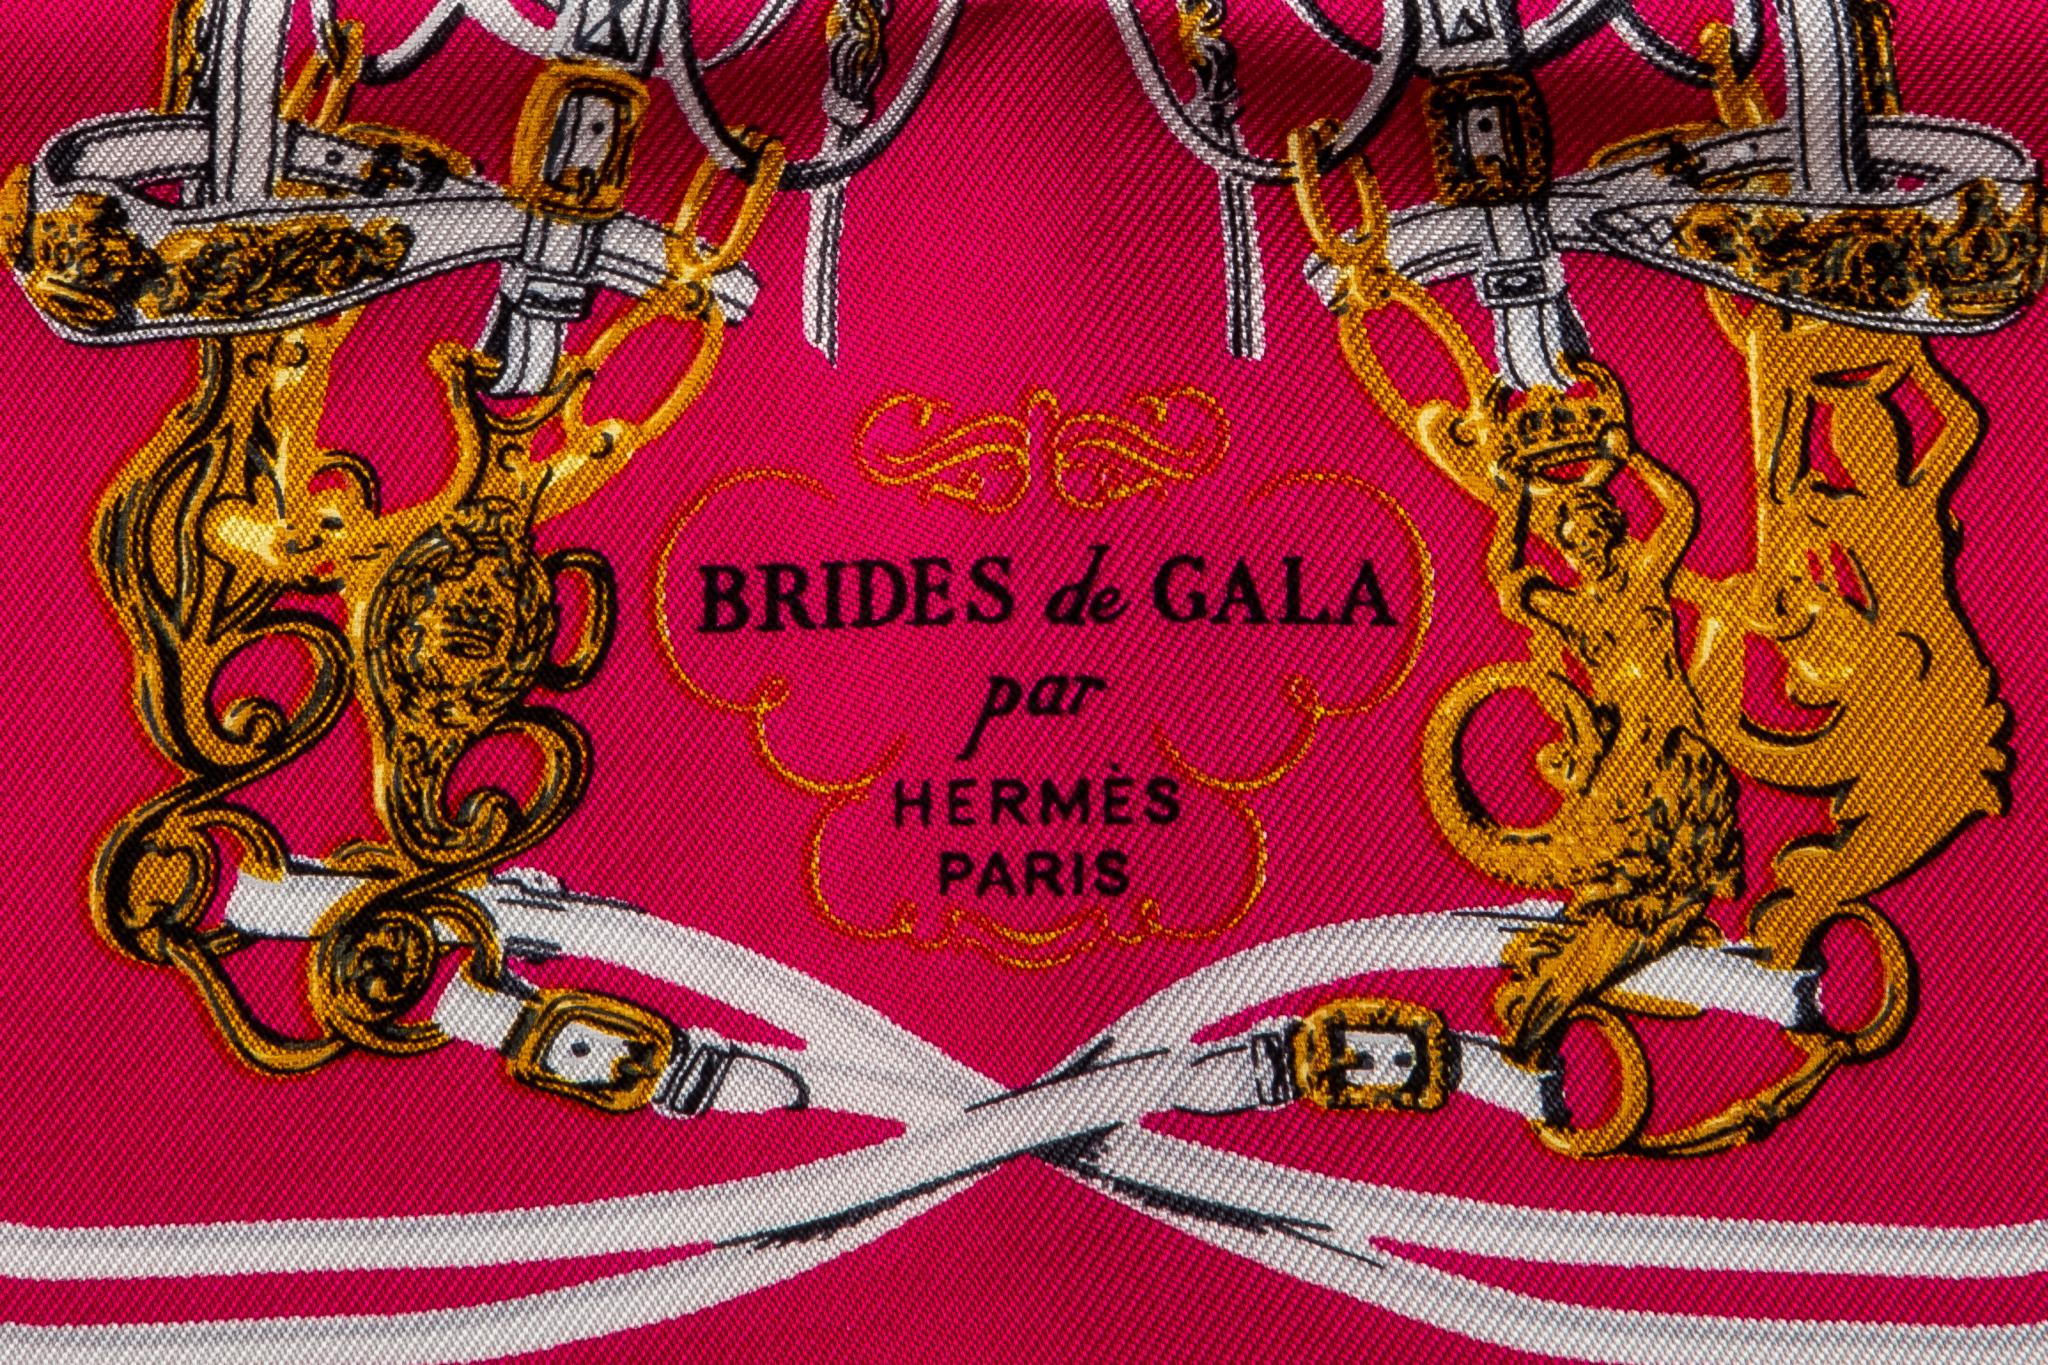 brides de gala par hermes paris